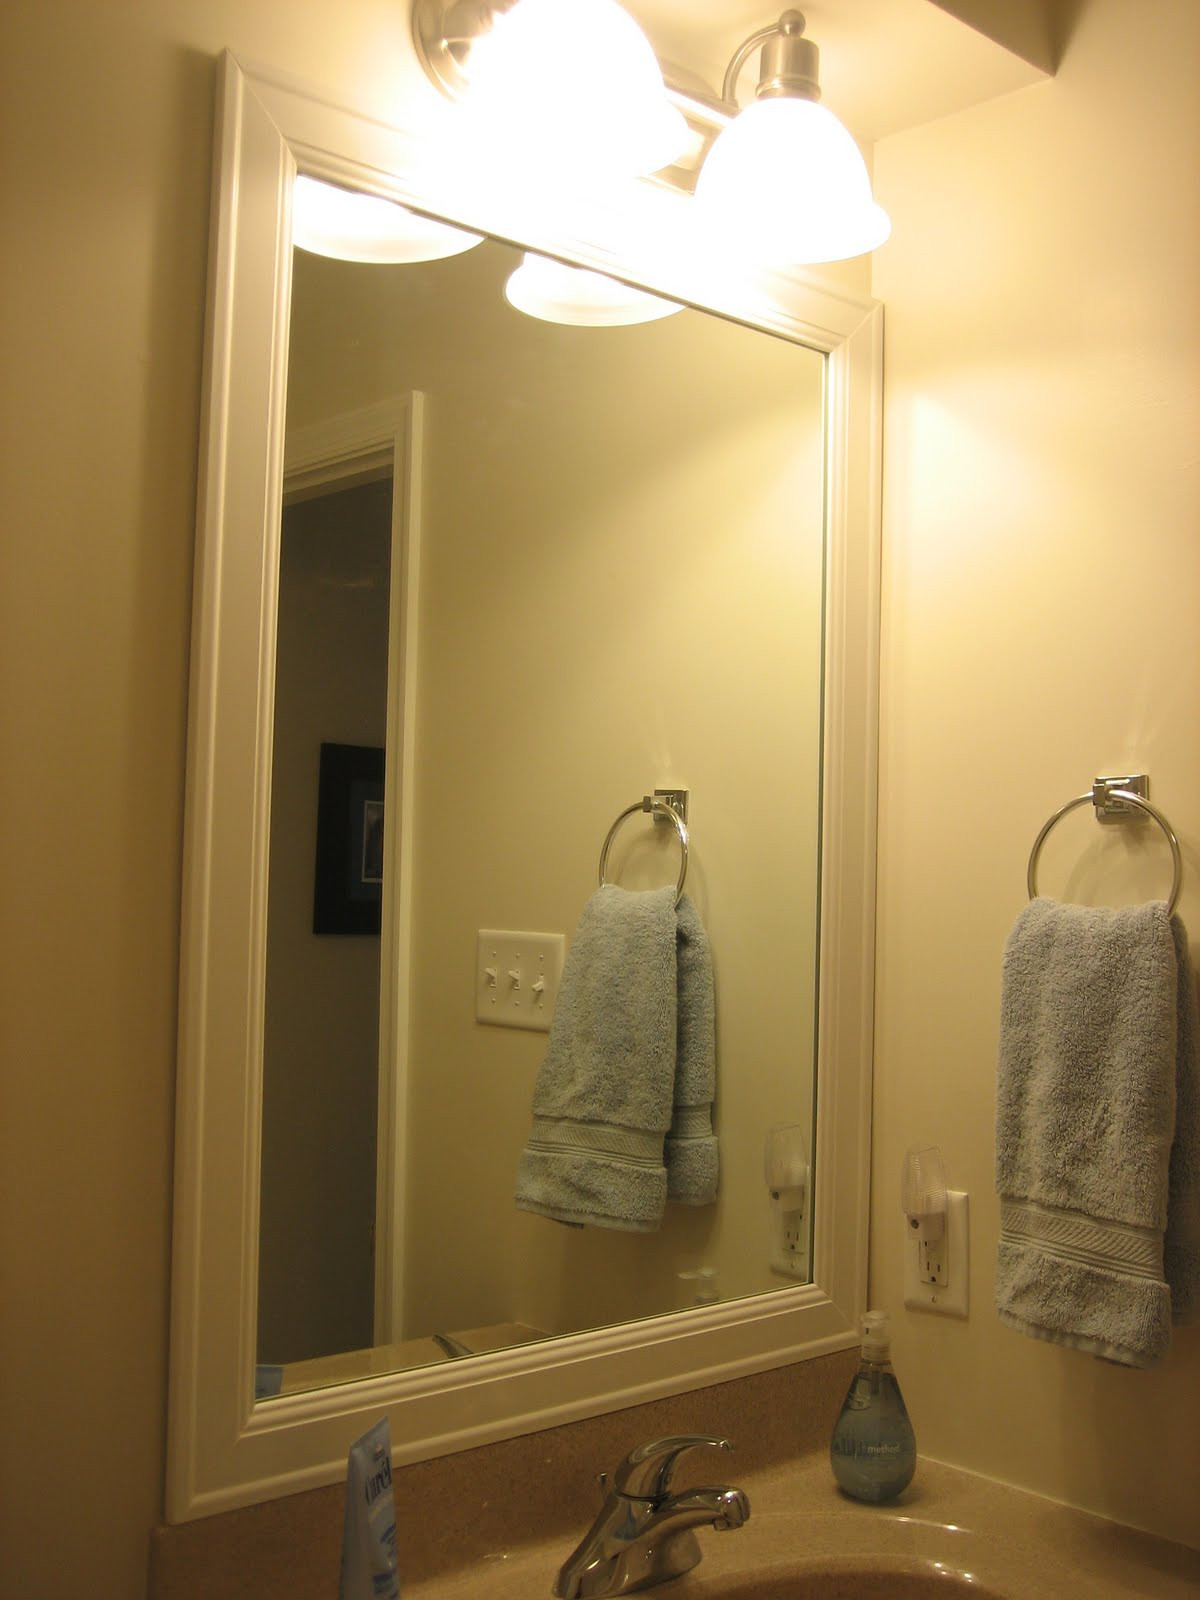 Frame A Bathroom Mirror
 Elizabeth & Co Framing Bathroom Mirrors